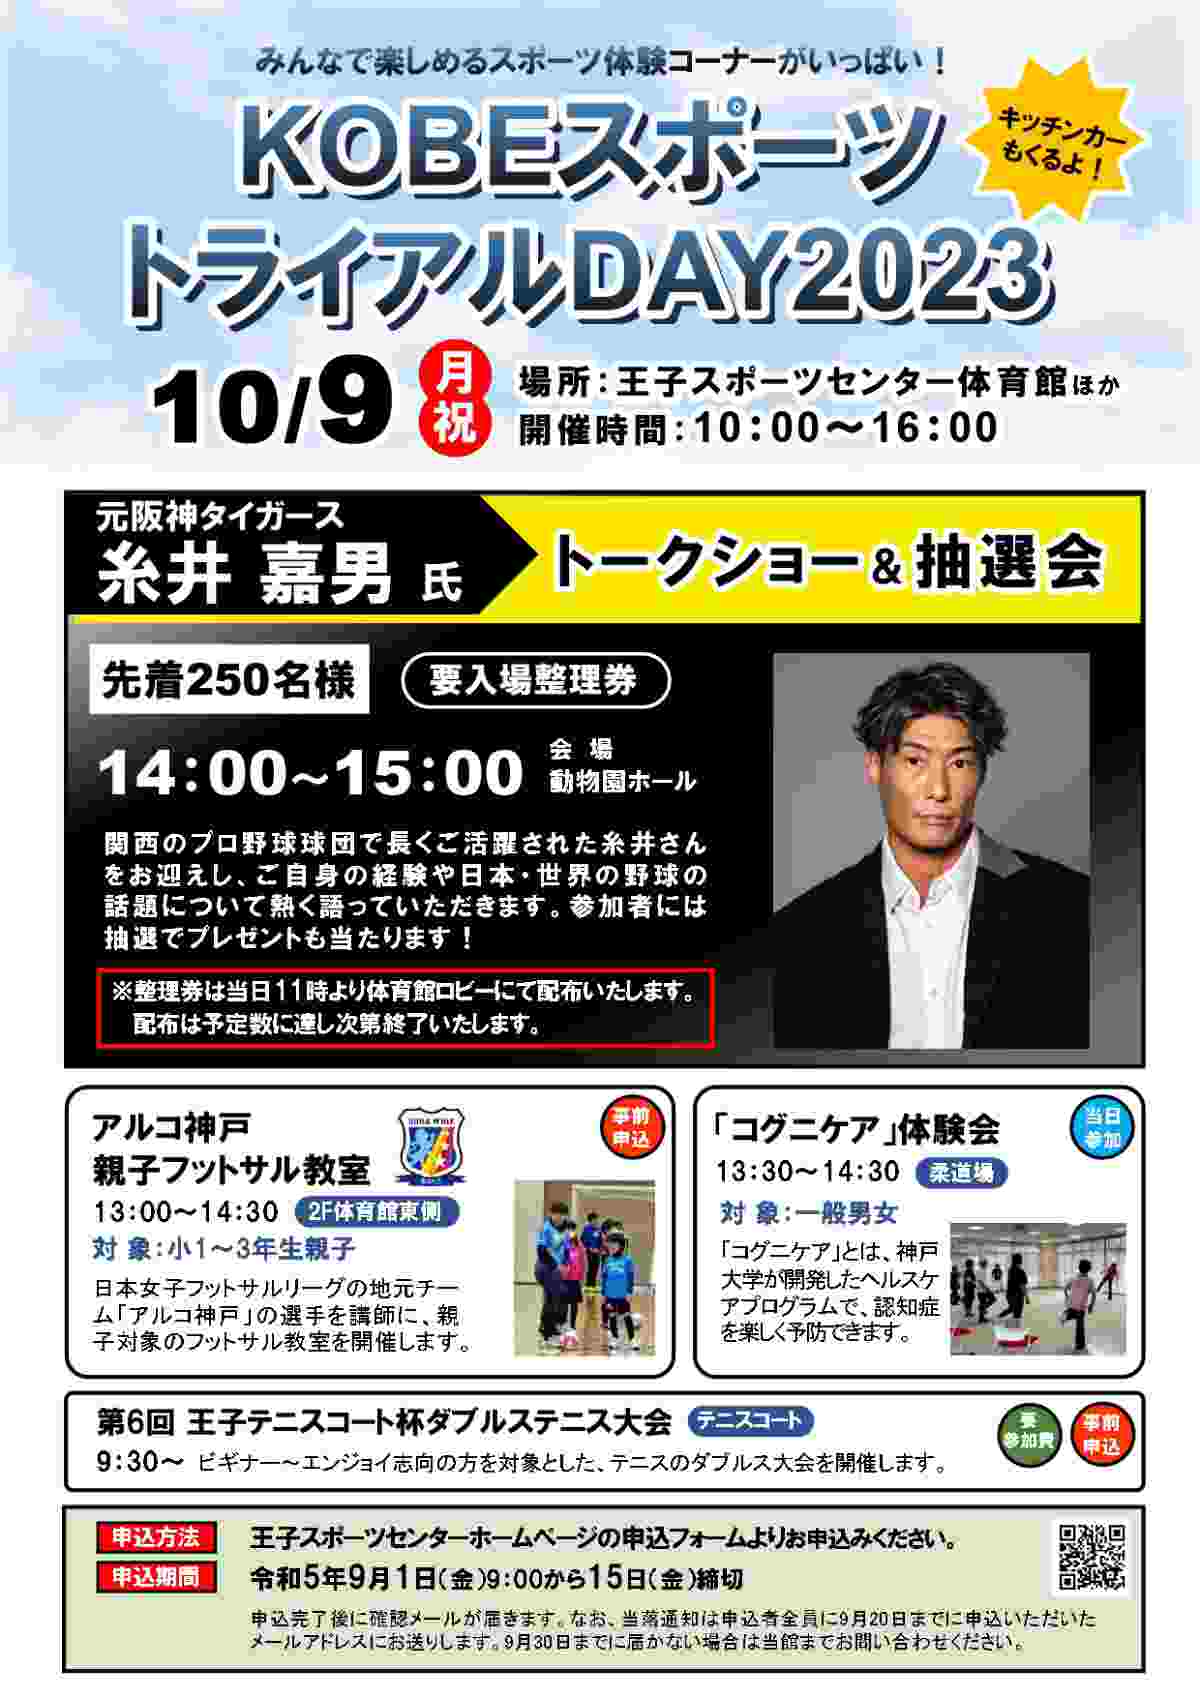 王子スポーツセンターで「KOBEスポーツトライアルDAY2023」開催　神戸市 [画像]